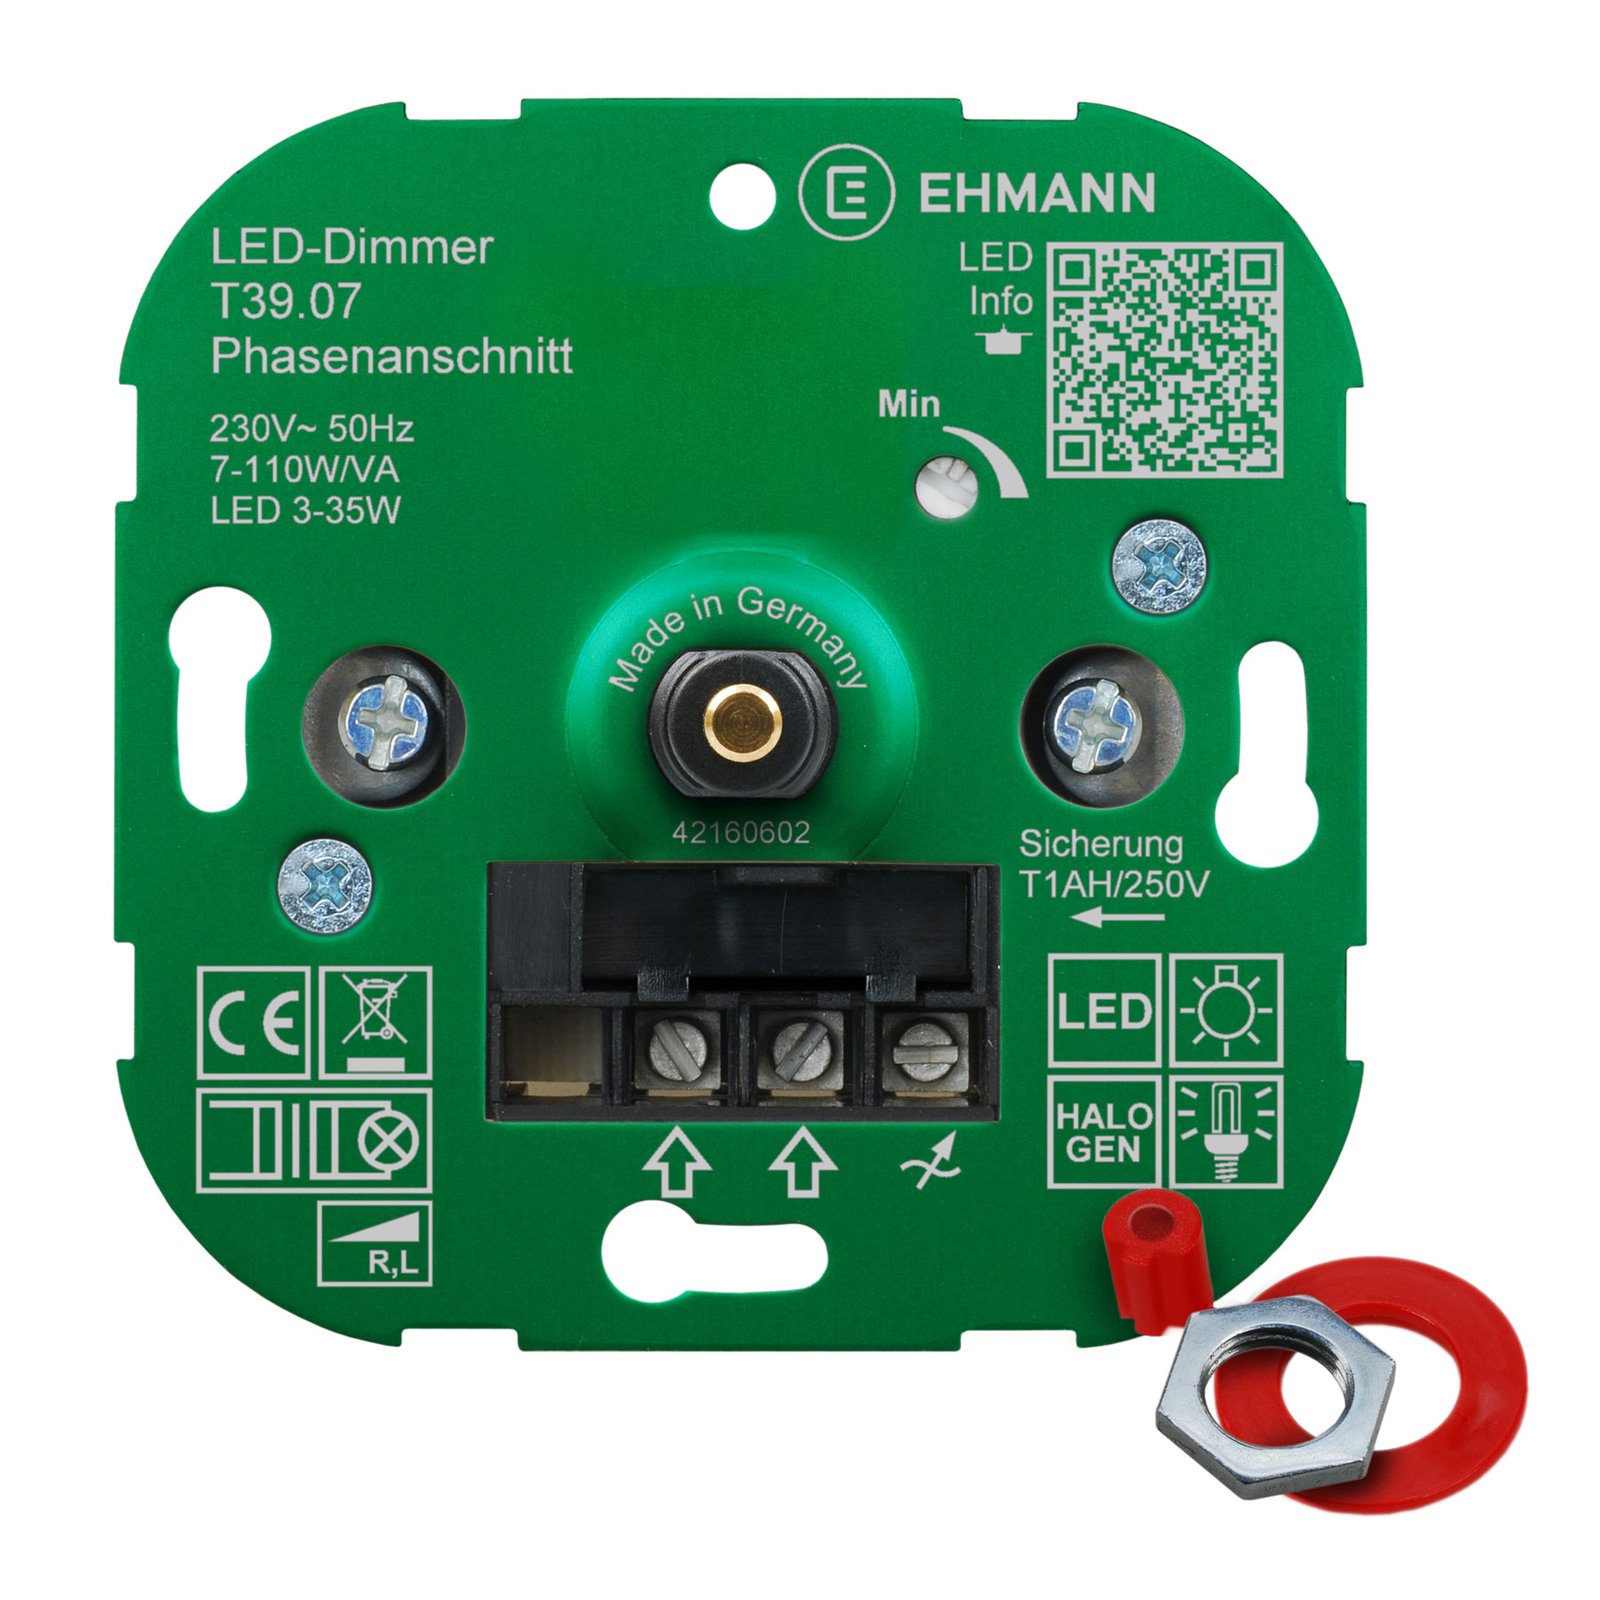 EHMANN T39 LED-dimmer fasinlopp, 3-35W